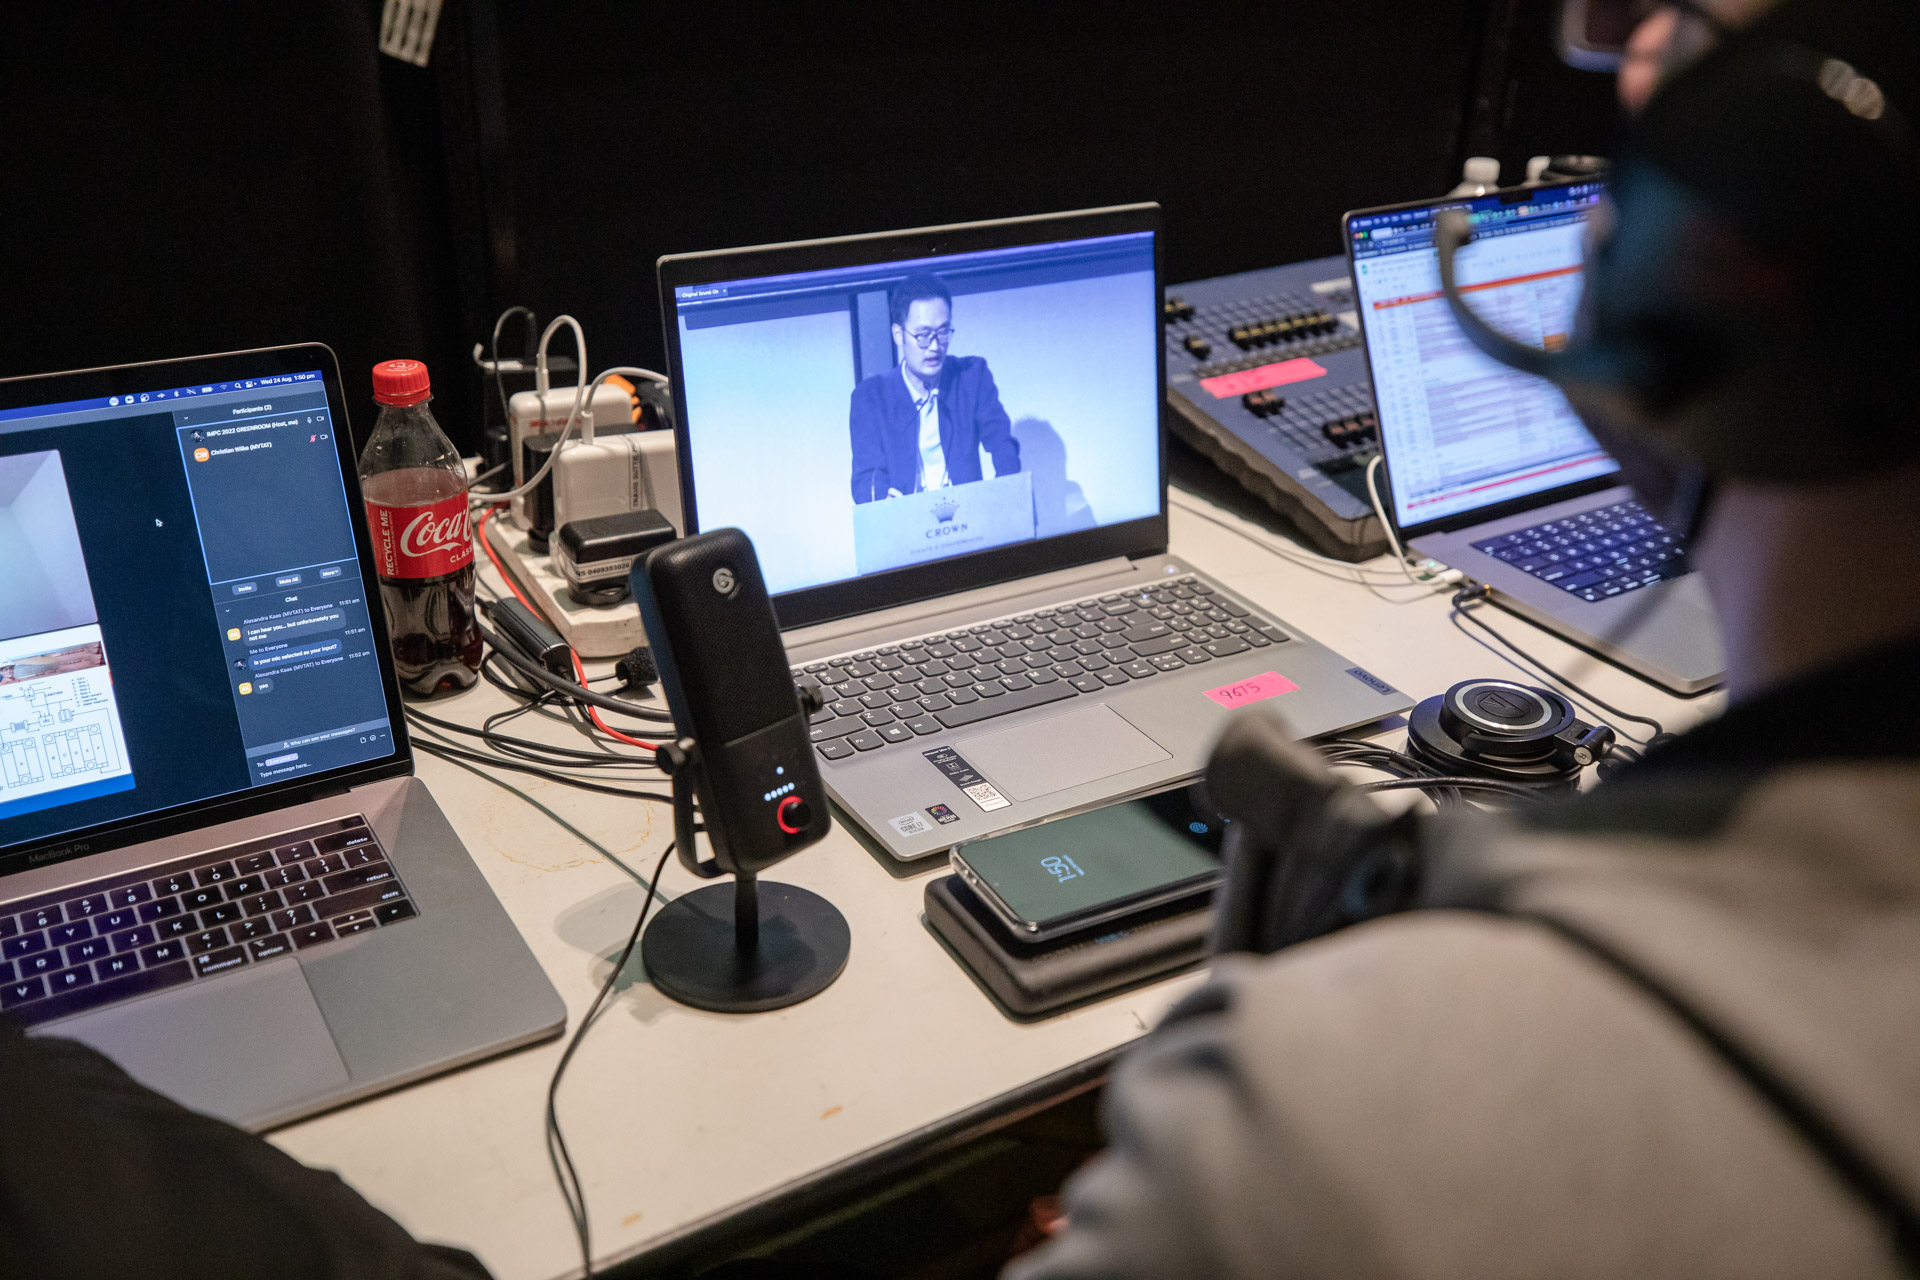 Speaker footage streaming on laptop